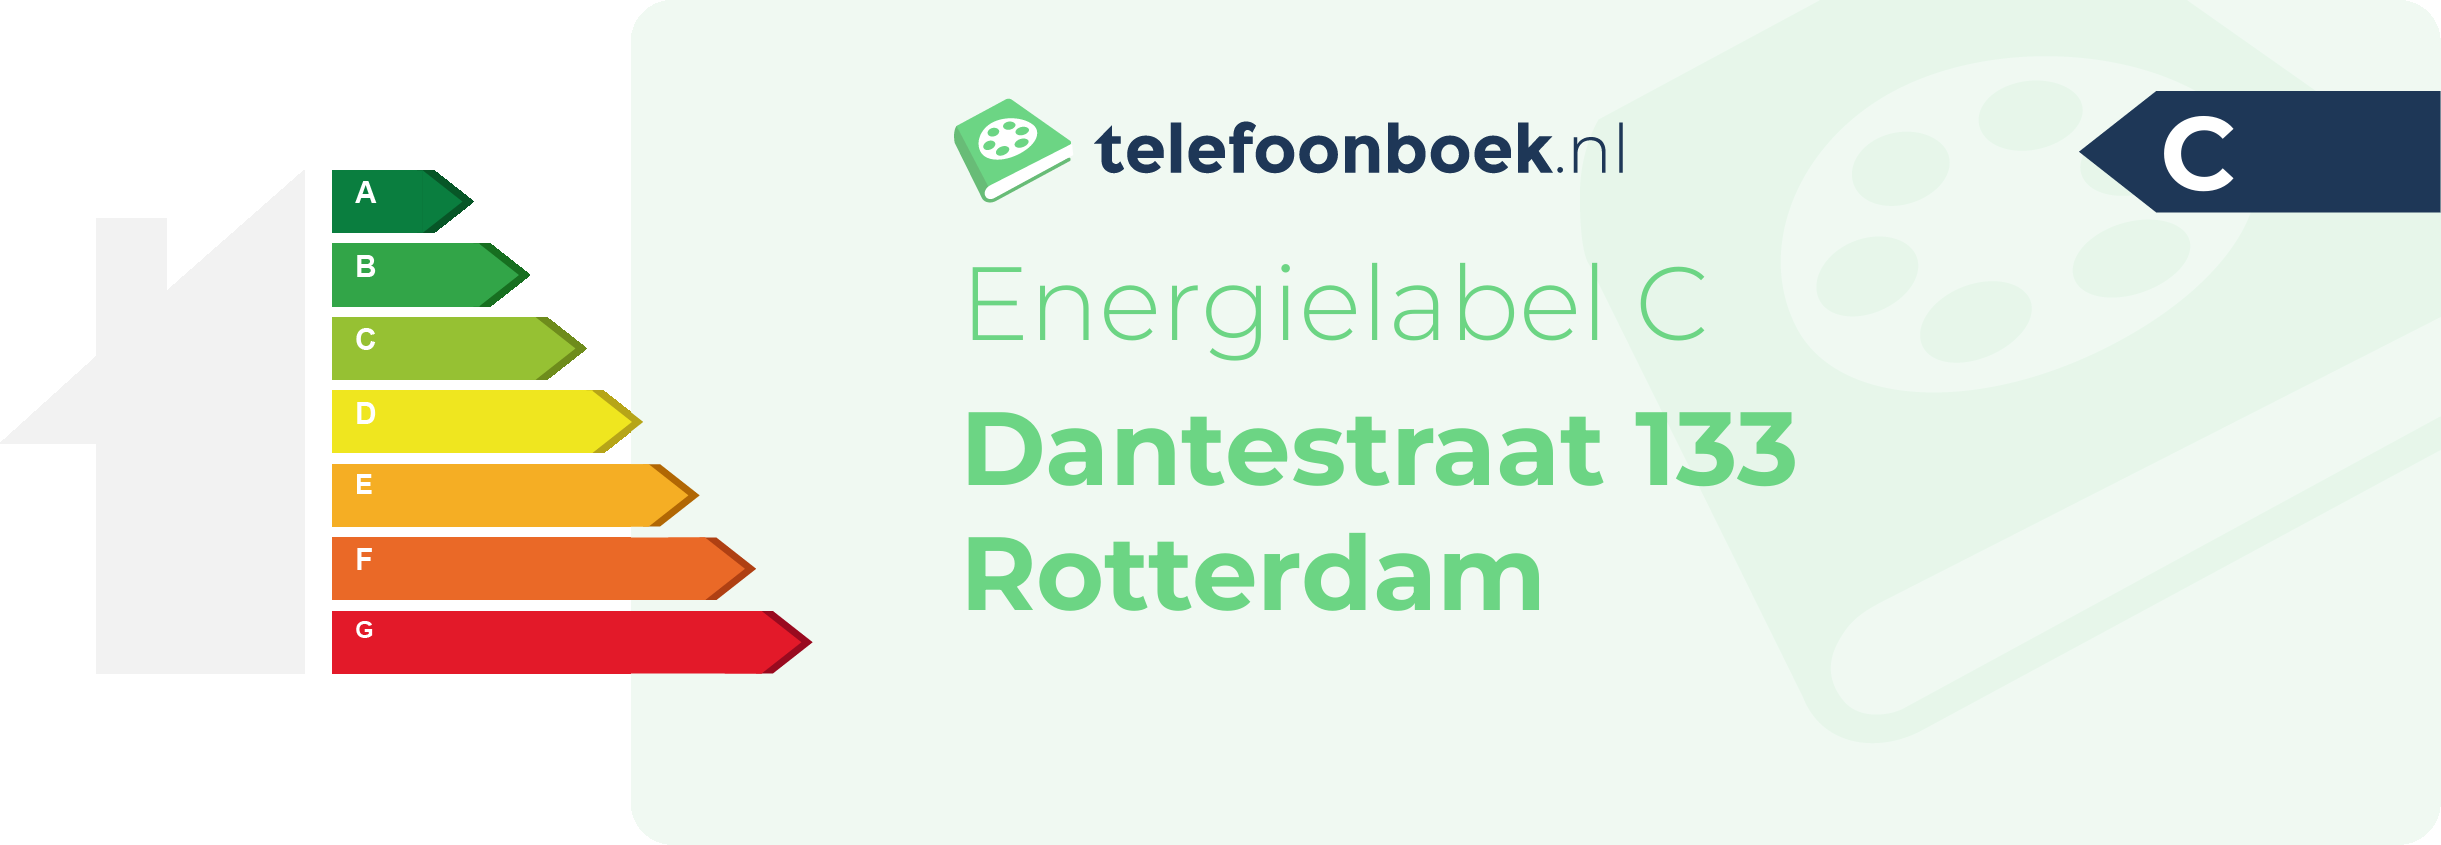 Energielabel Dantestraat 133 Rotterdam